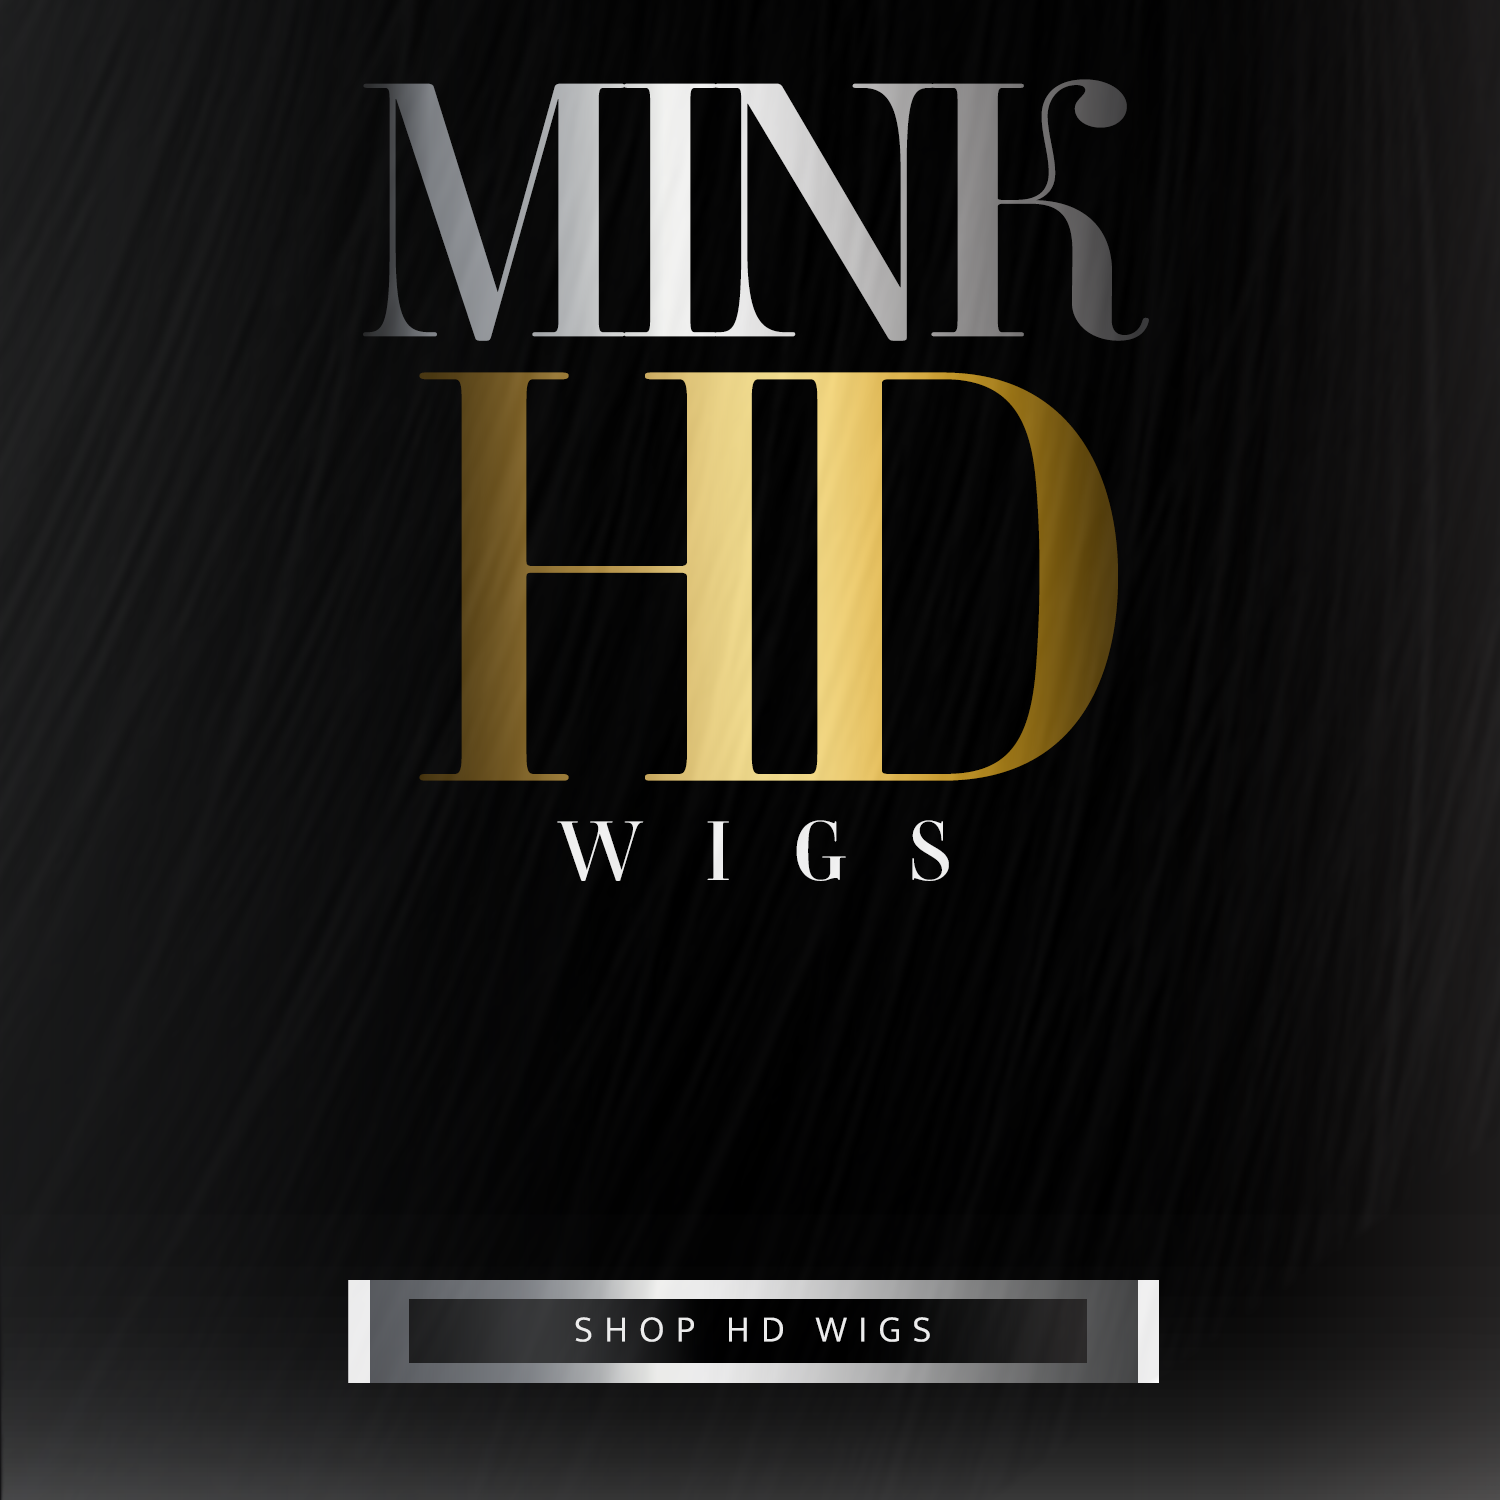 Mink HD Wigs